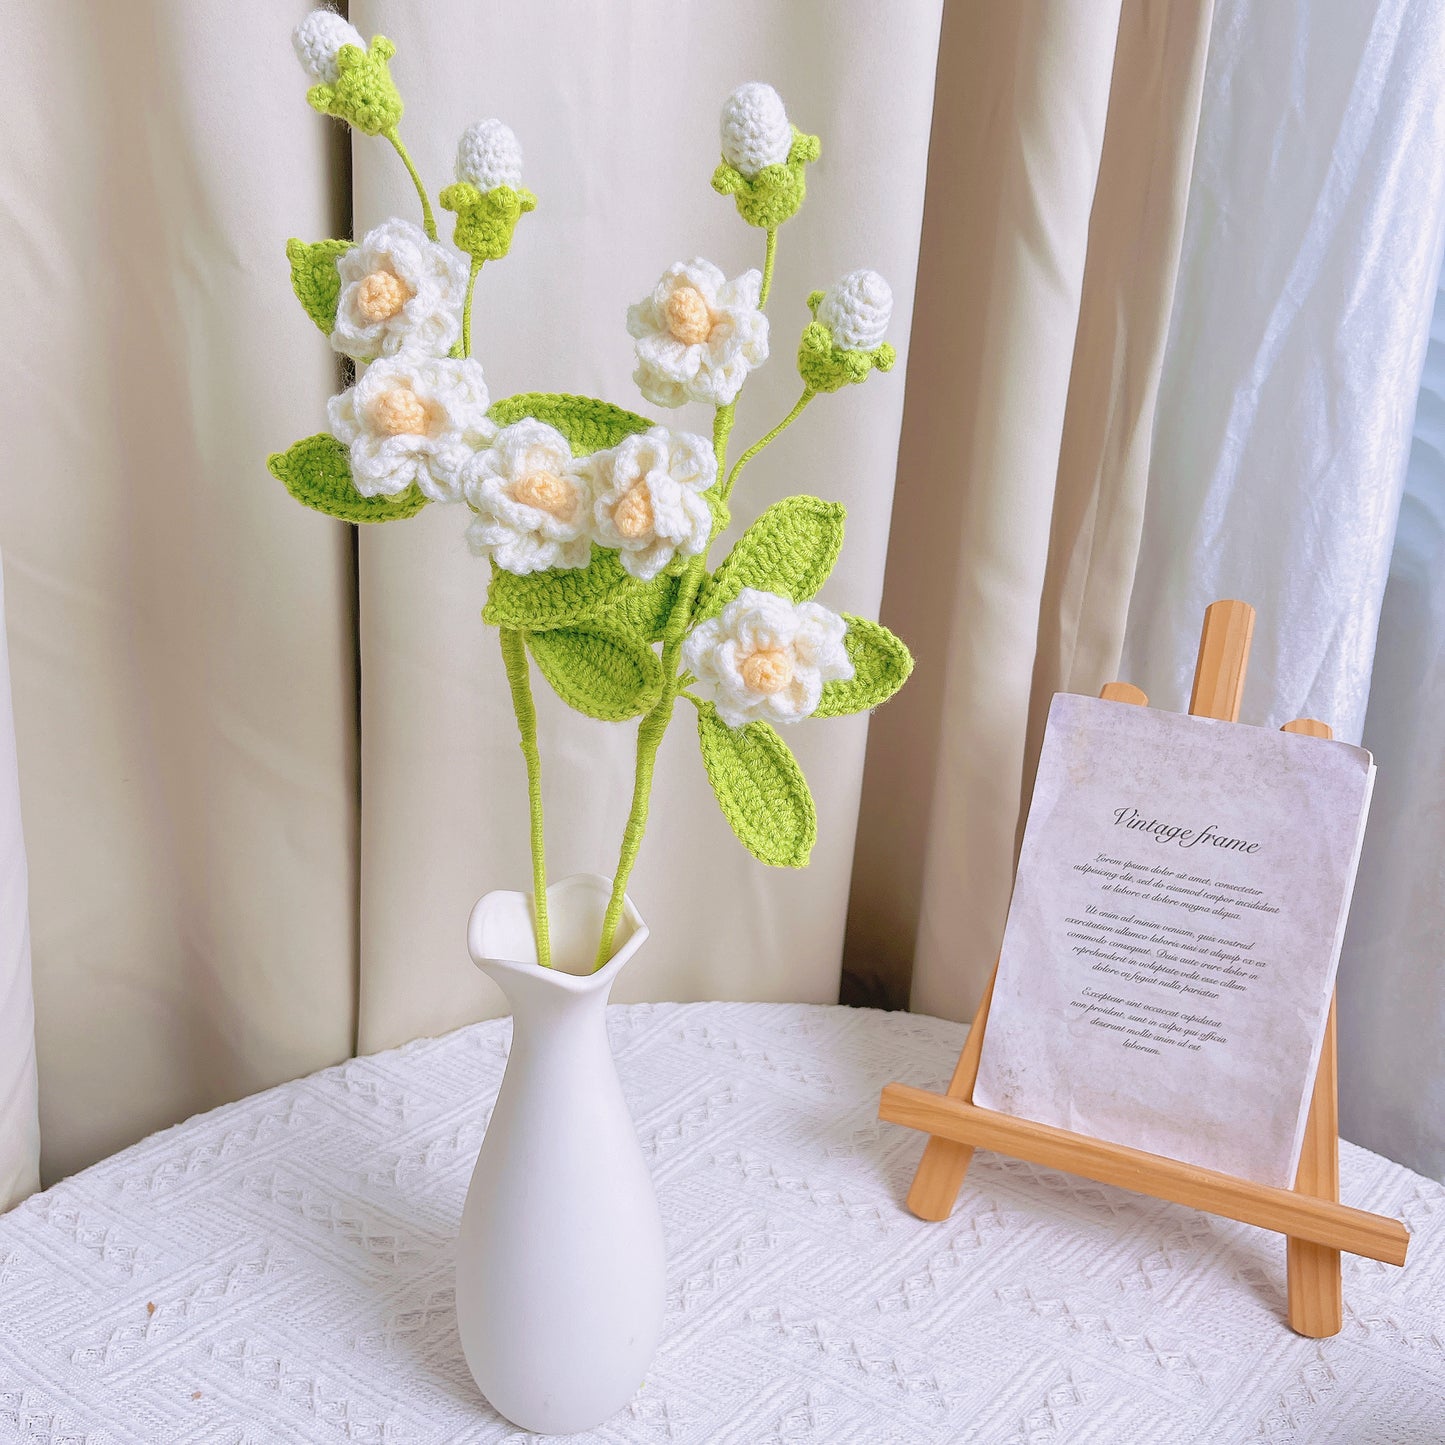 Handgefertigte gehäkelte Jasminblüte – wunderschön, lebendig und ein wahres Kunstwerk